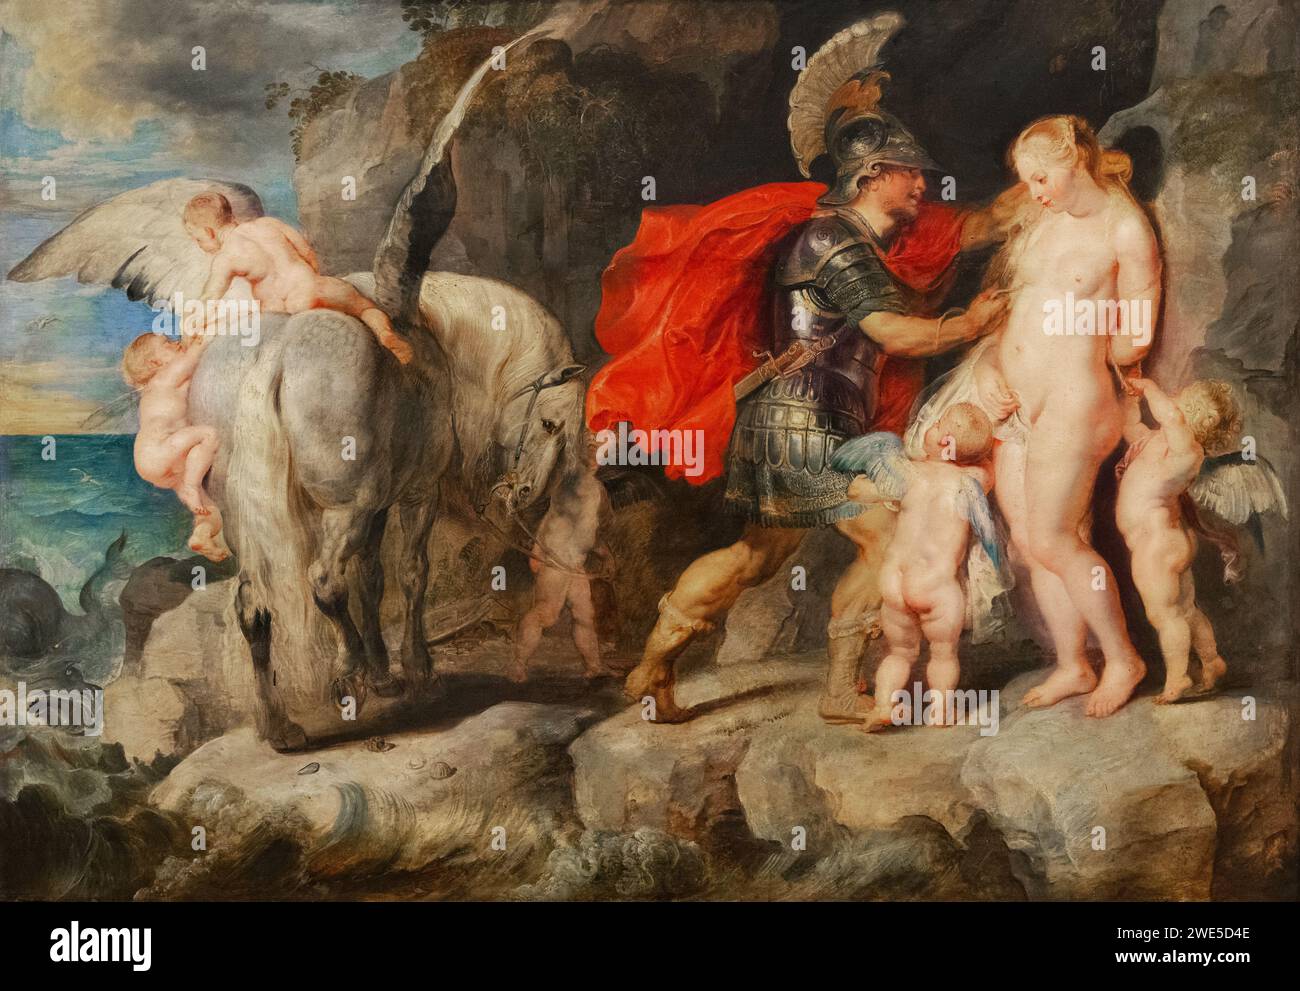 Sir Peter Paul Rubens Gemälde, Perseus Frees Andromeda, 1620–22; Gemälde einer Szene aus der griechischen Mythologie. Barockmalerei aus dem 17. Jahrhundert. Stockfoto